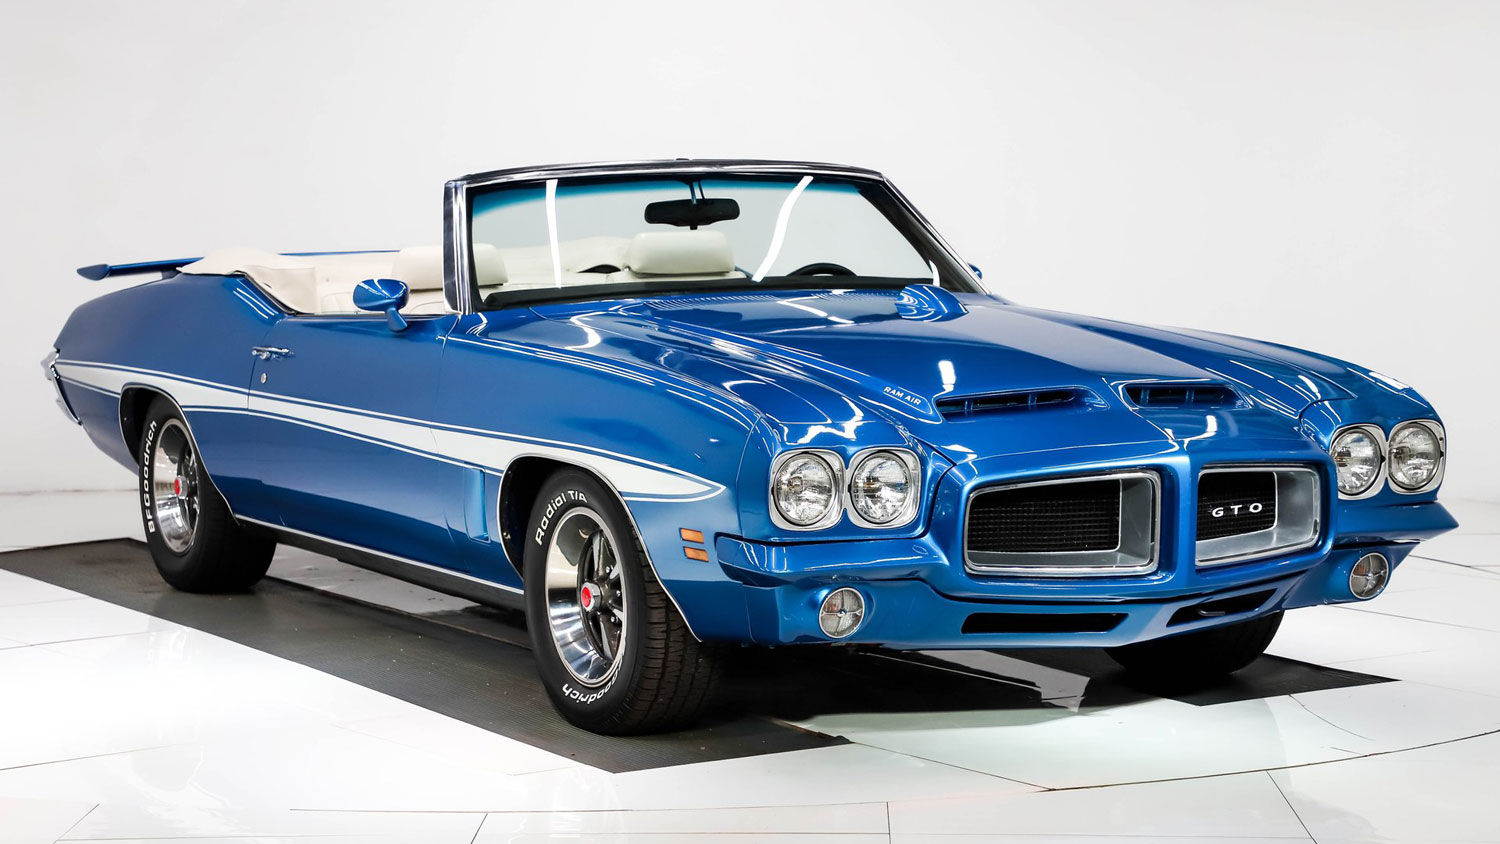 https://gmauthority.com/blog/wp-content/uploads/2022/10/1972-Pontiac-GTO-convertible-exterior-007-Volo-Auto-Lucerne-Blue-passenger-front-three-quarter.jpg